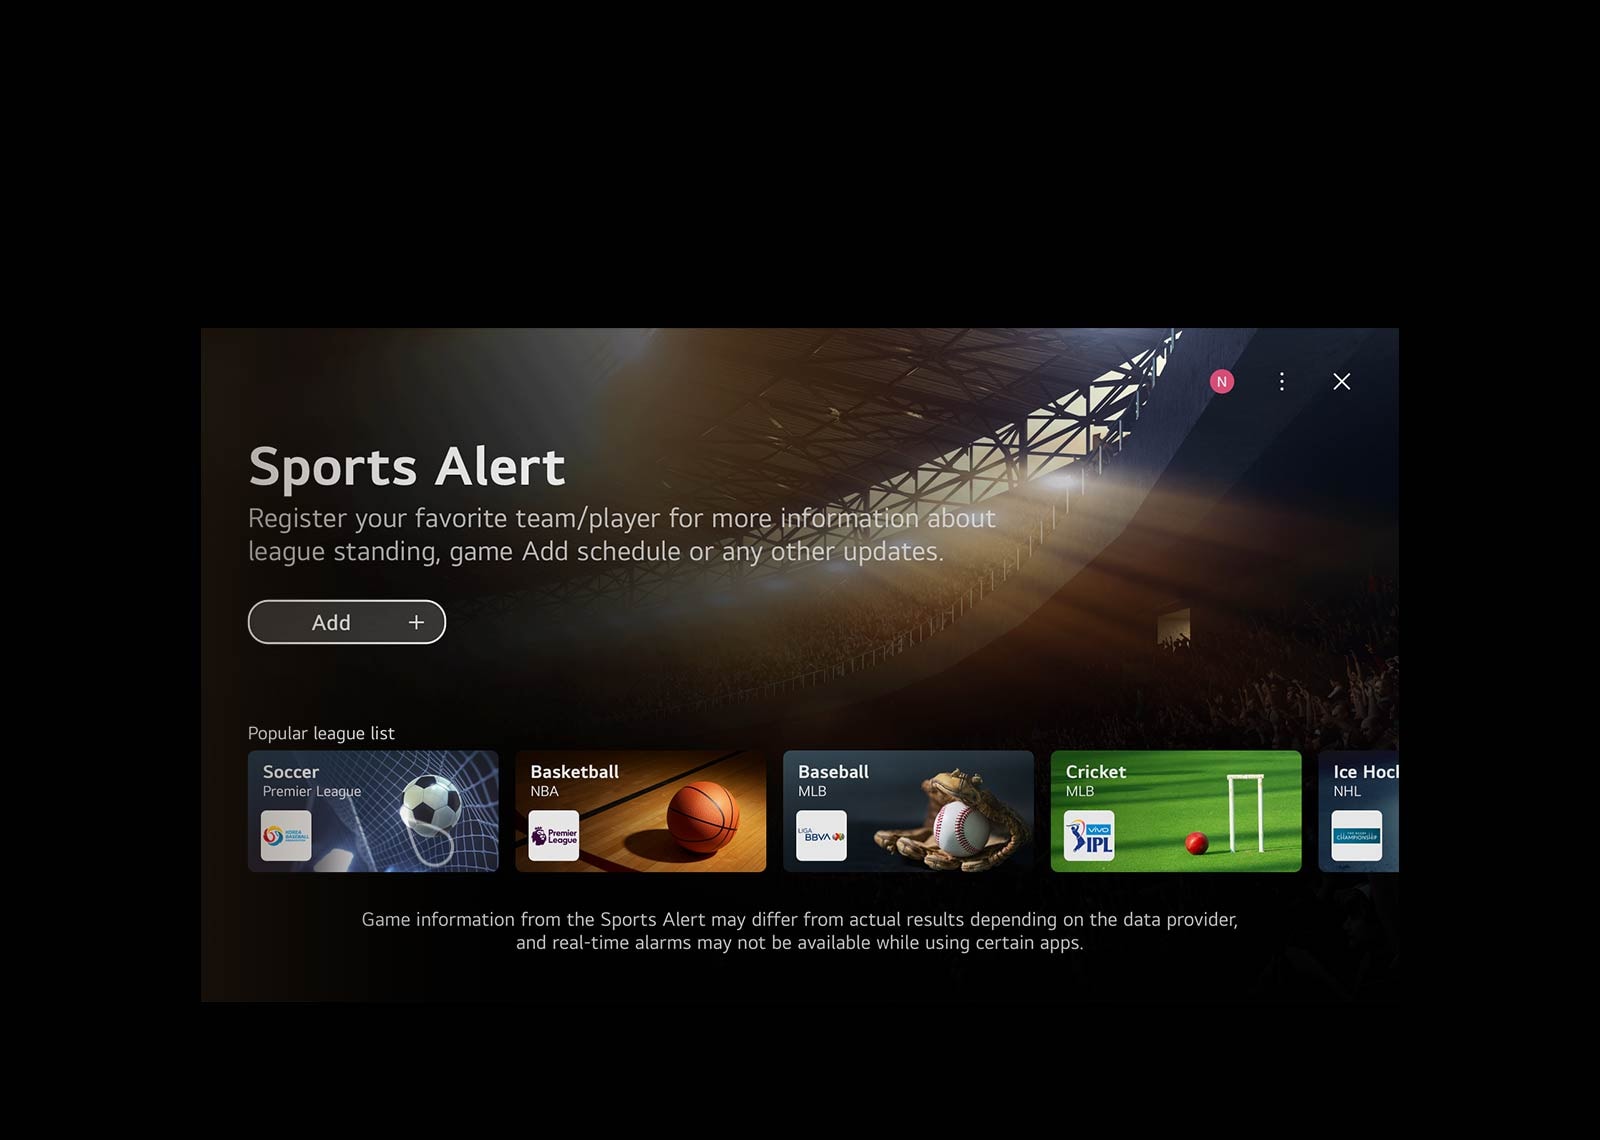 Une vidéo montrant l'écran d'accueil de WebOS.  Le curseur clique sur la carte rapide du jeu, puis sur la carte rapide des sports, qui mènent toutes deux à des écrans avec un contenu connexe.